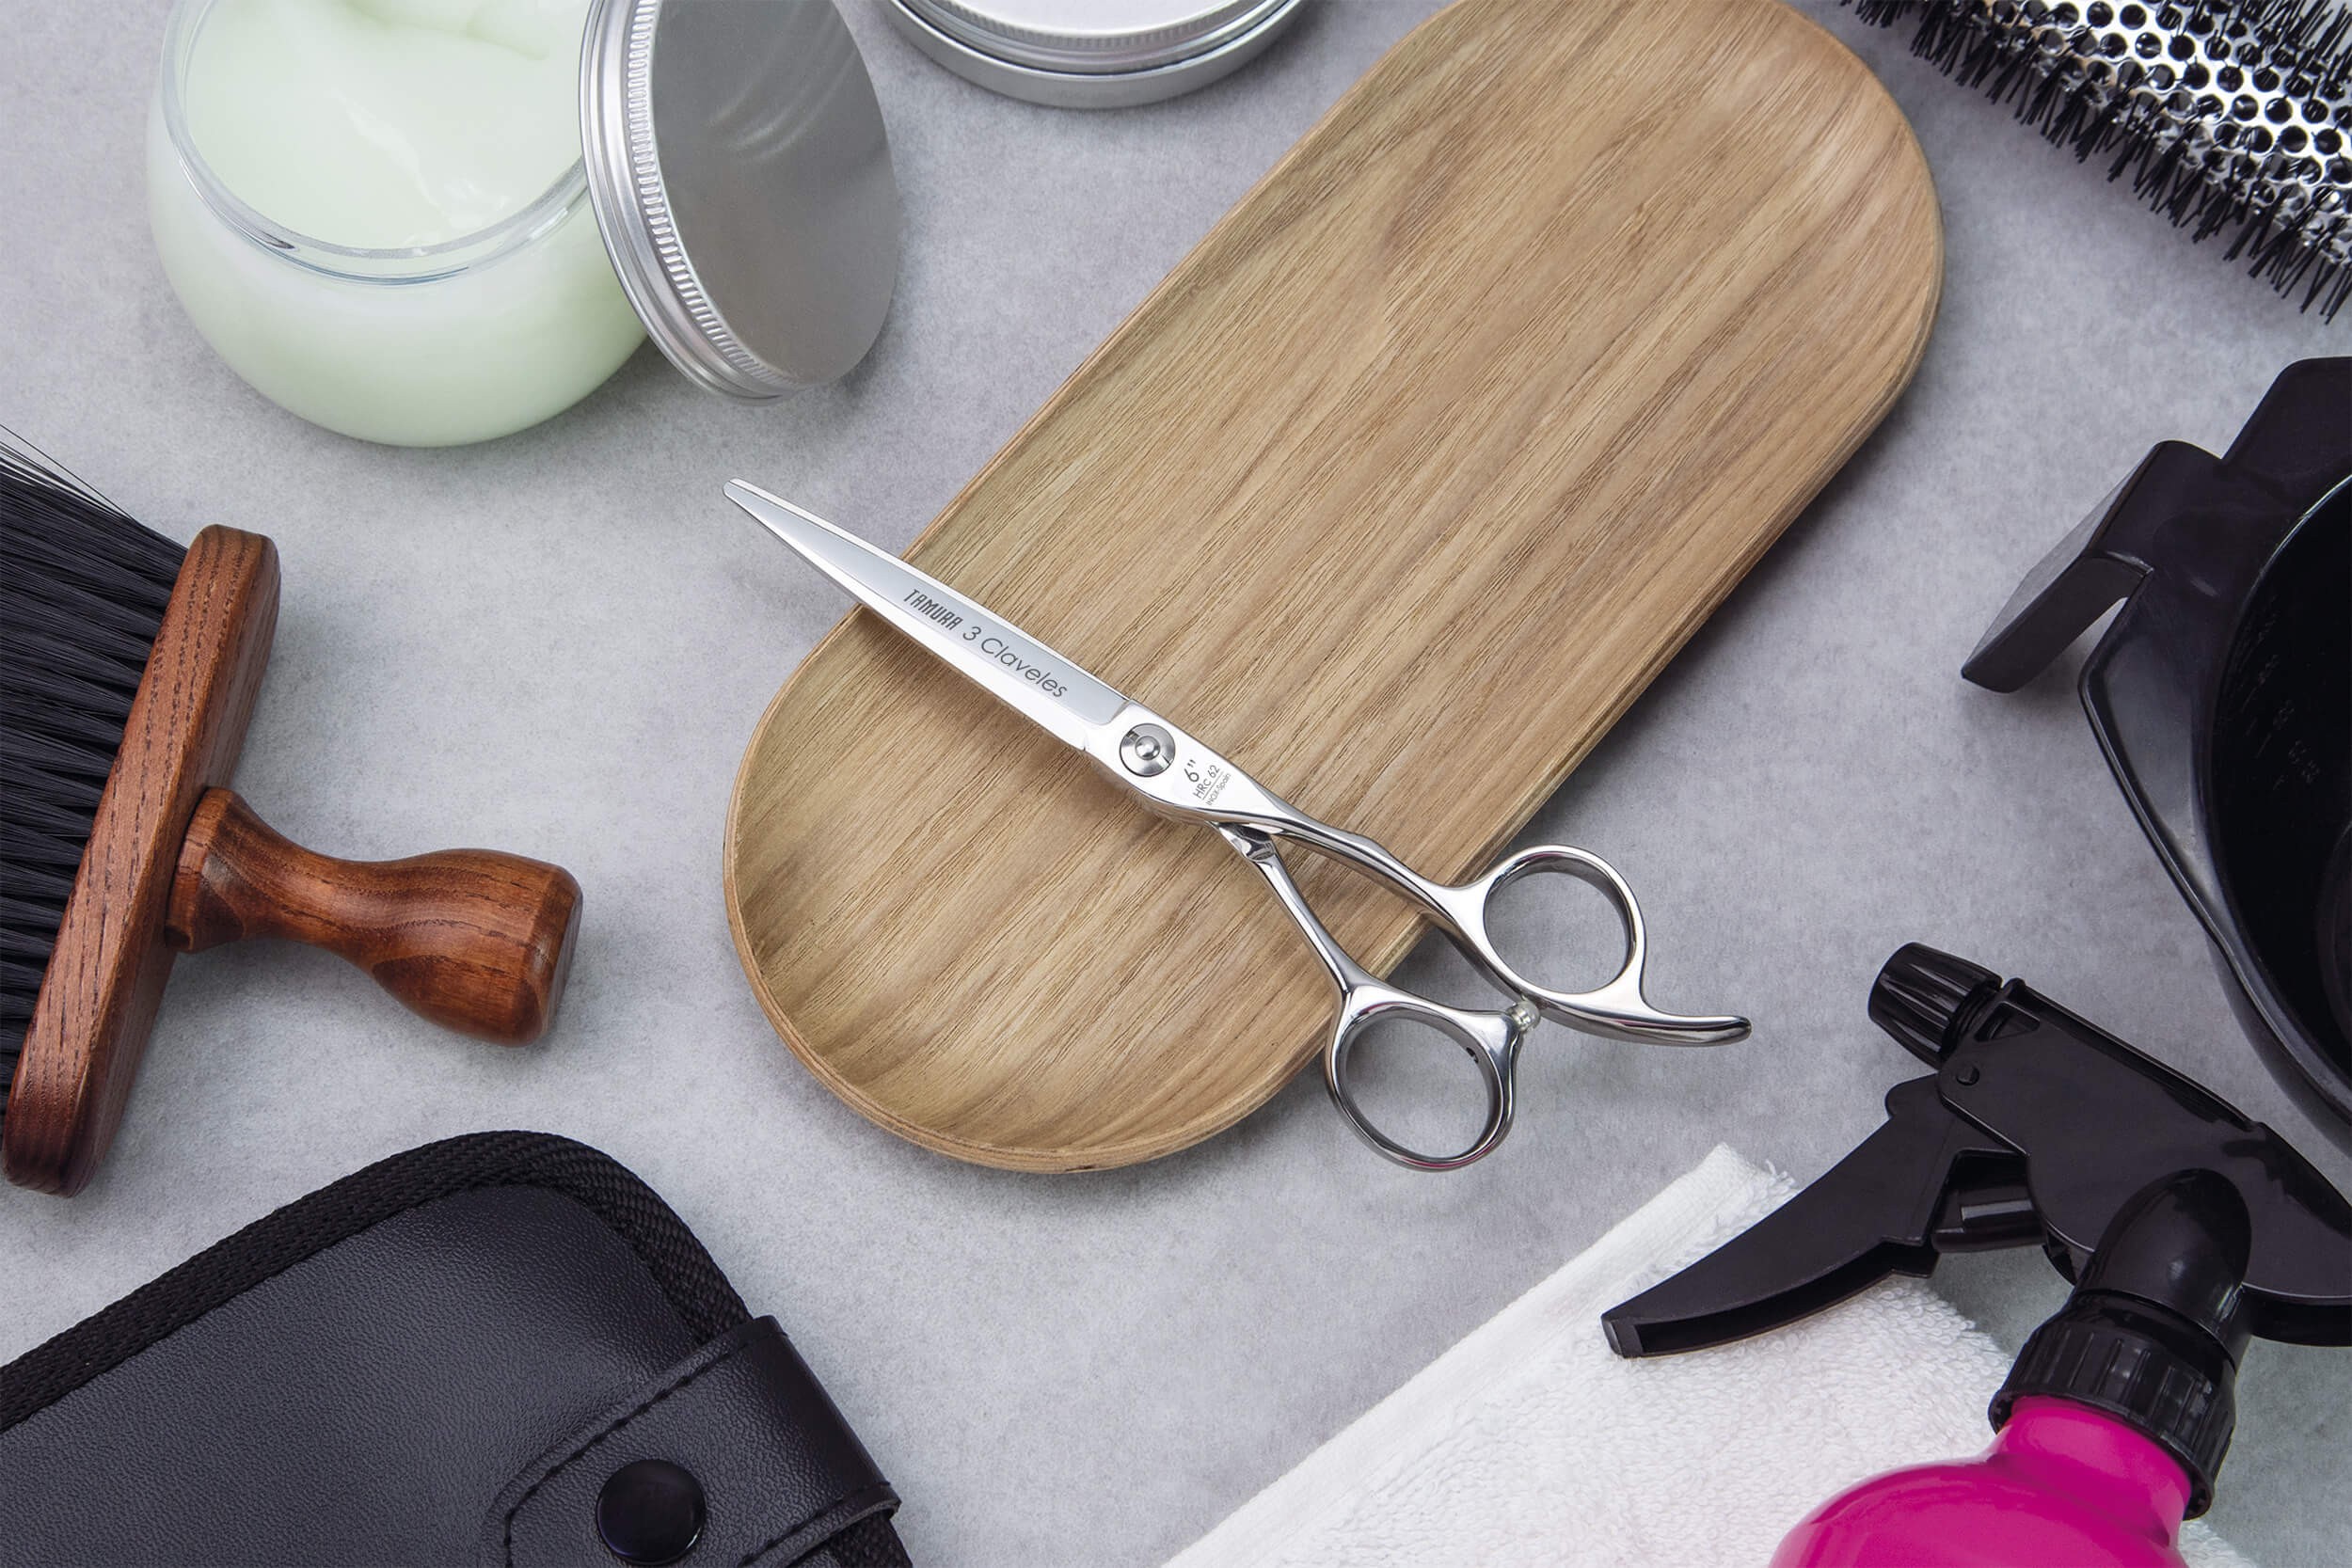 Tamura Hairdressing Scissors